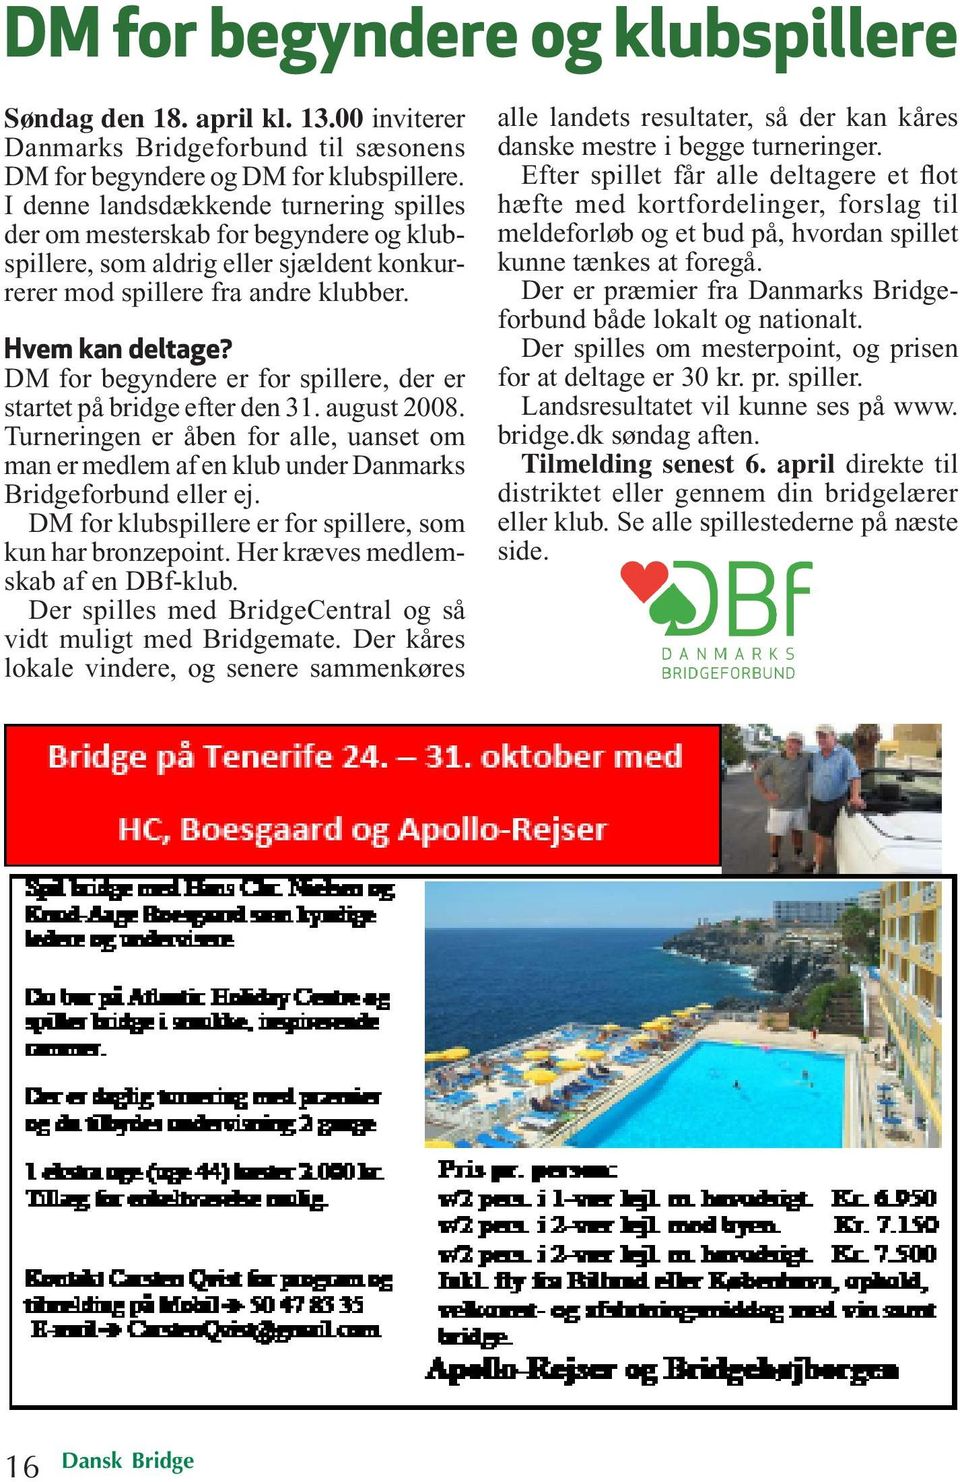 DM for begyndere er for spillere, der er startet på bridge efter den 31. august 2008. Turneringen er åben for alle, uanset om man er medlem af en klub under Danmarks Bridgeforbund eller ej.